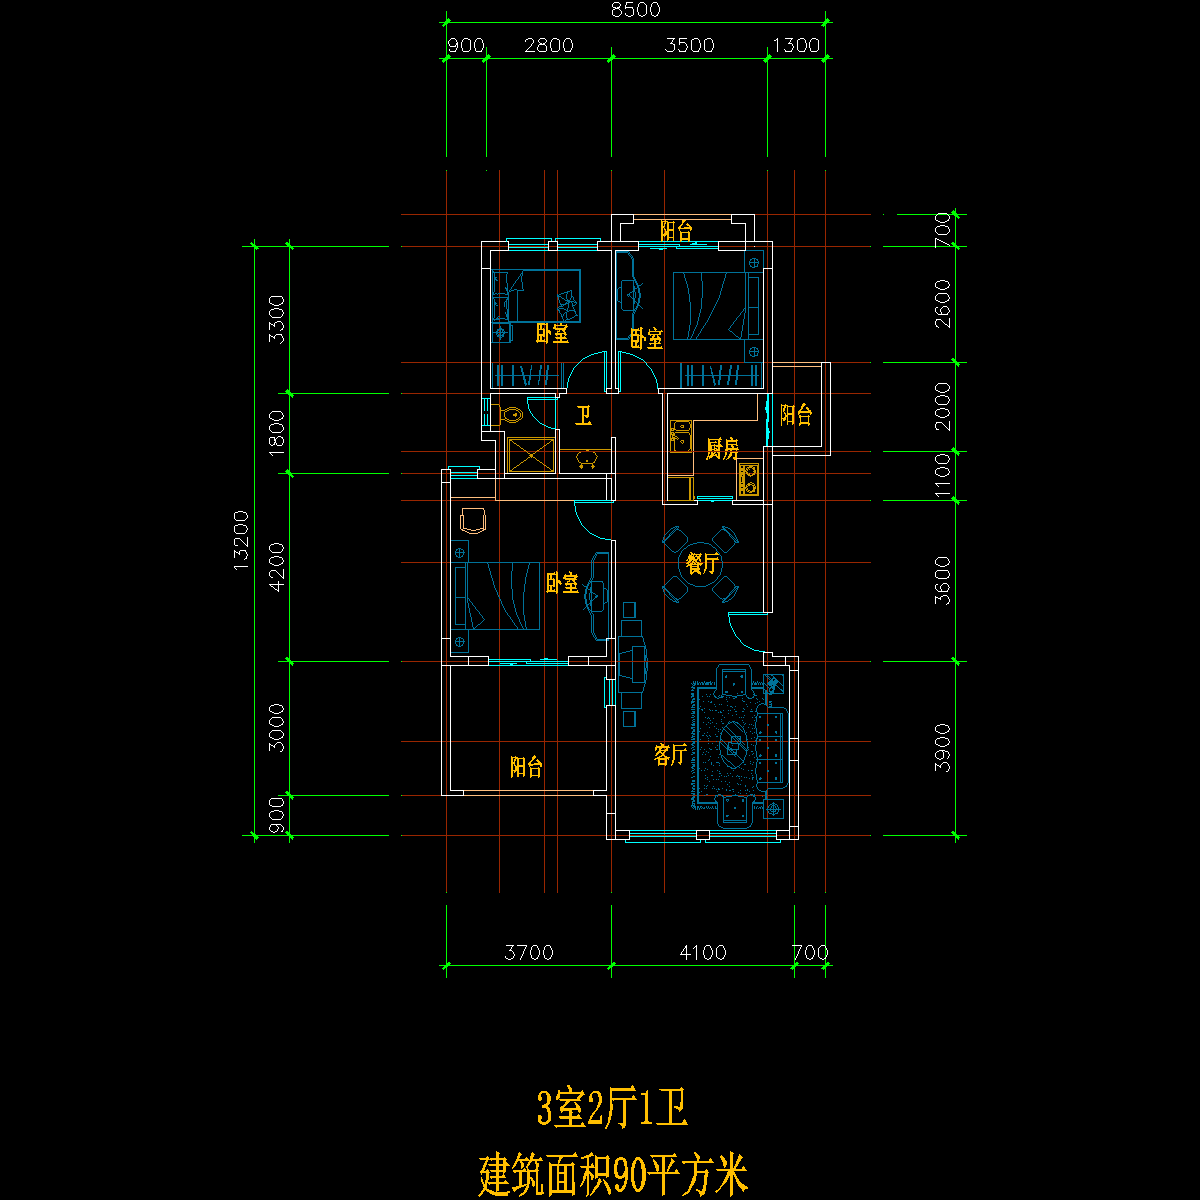 板式多层单户三室二厅一卫户型CAD图纸(90)